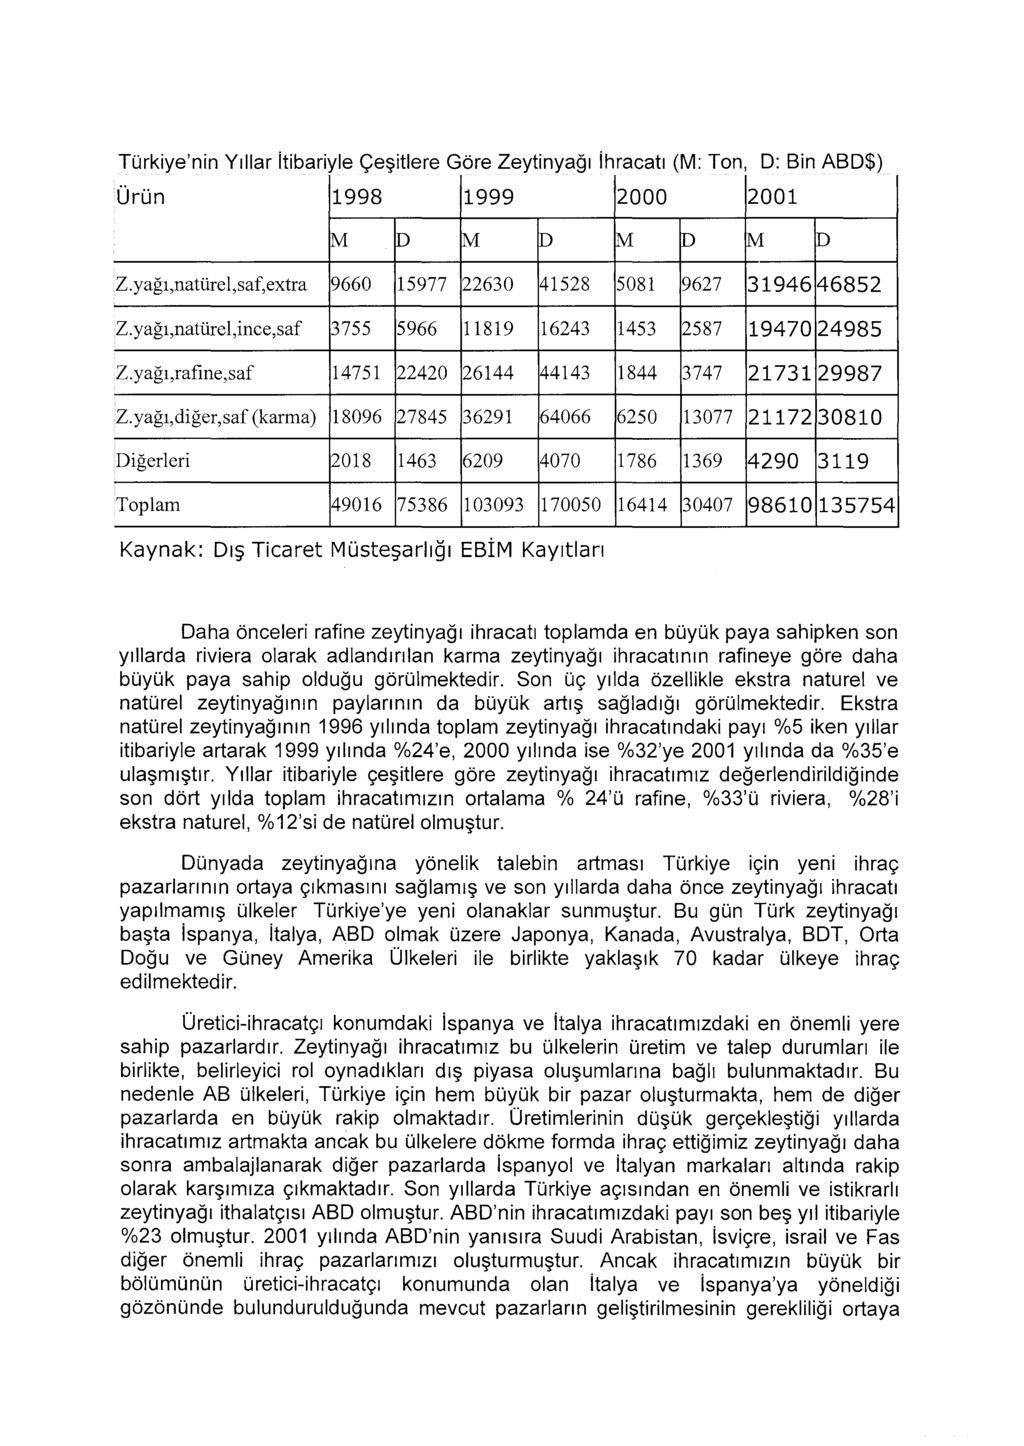 Türkiye'nin Yıllar itibariyle Çeşitlere Göre Zeytinyağı ihracatı (M: Ton, D: Bin ABD$) Ürün 1998 1999 2000 2001 M D M p M D M D Z.